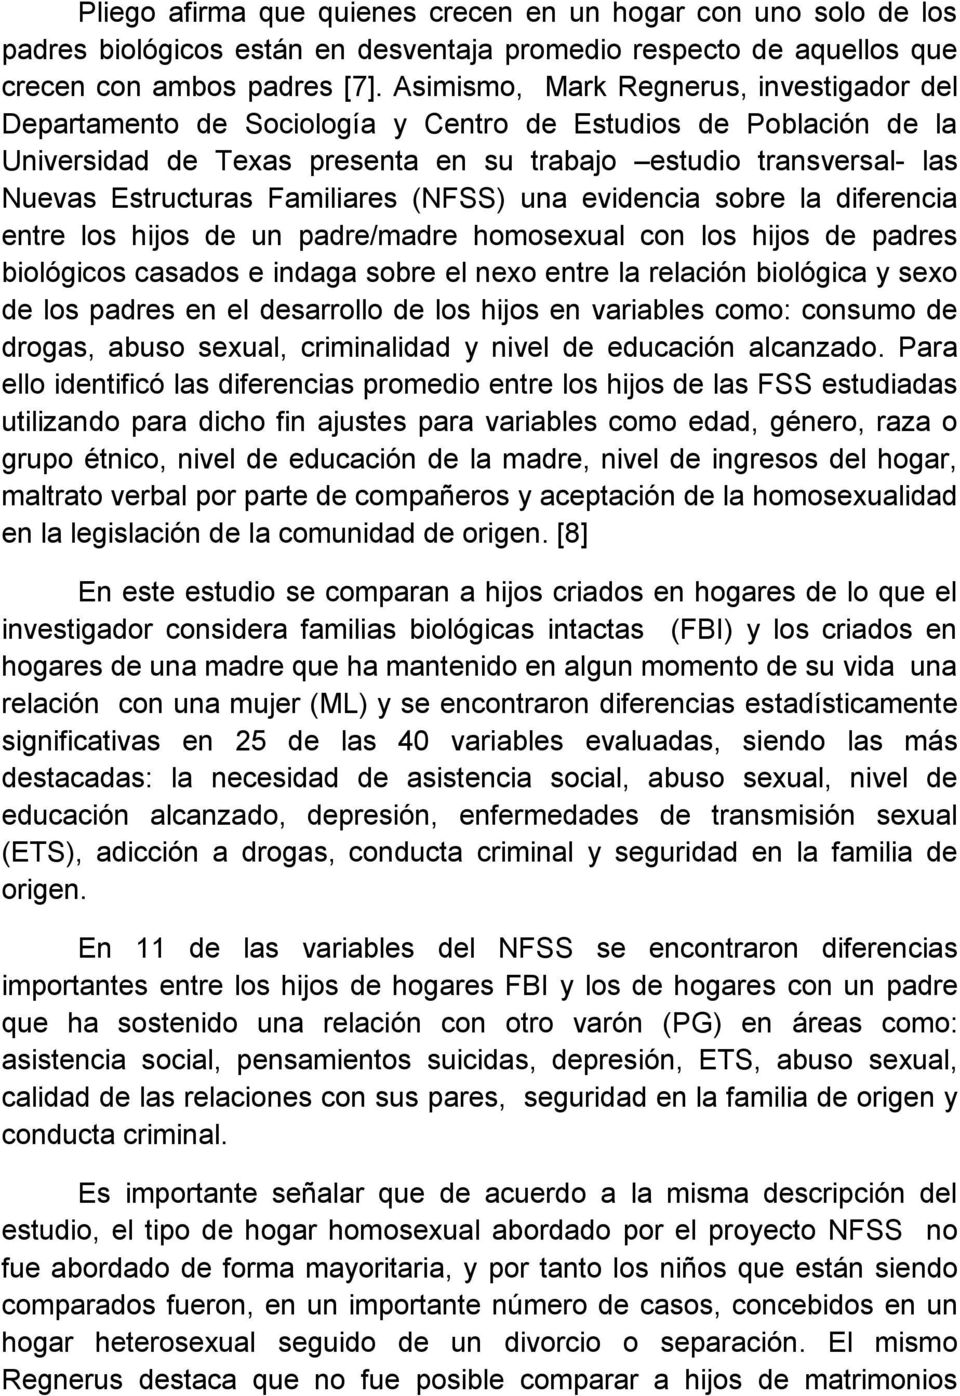 Familiares (NFSS) una evidencia sobre la diferencia entre los hijos de un padre/madre homosexual con los hijos de padres biológicos casados e indaga sobre el nexo entre la relación biológica y sexo